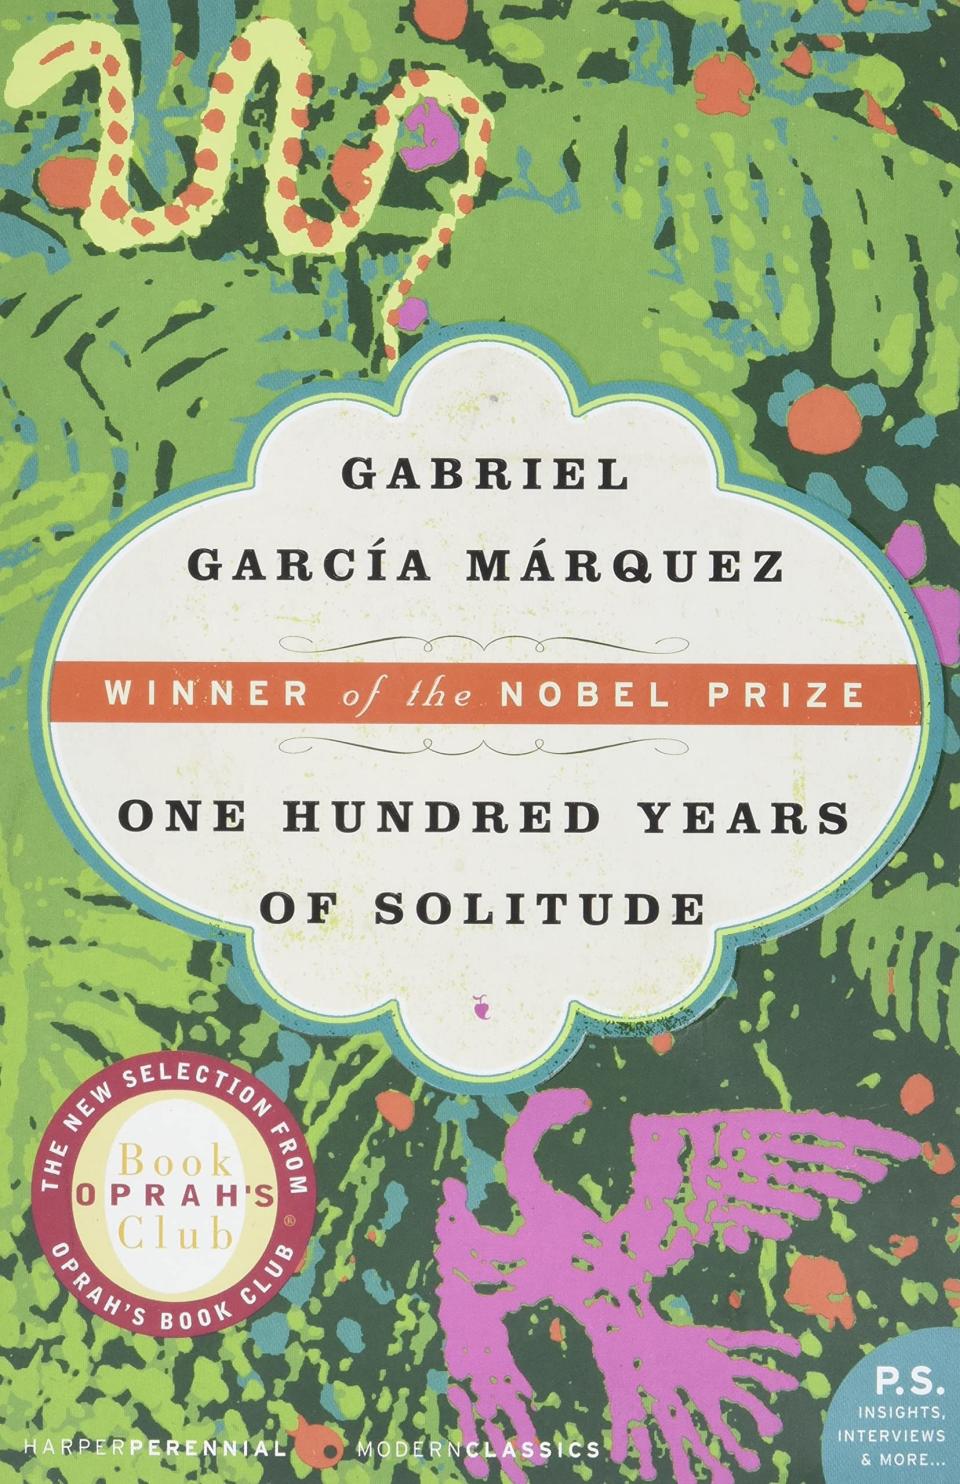 "100 Years of Solitude" by Gabriel García Márquez